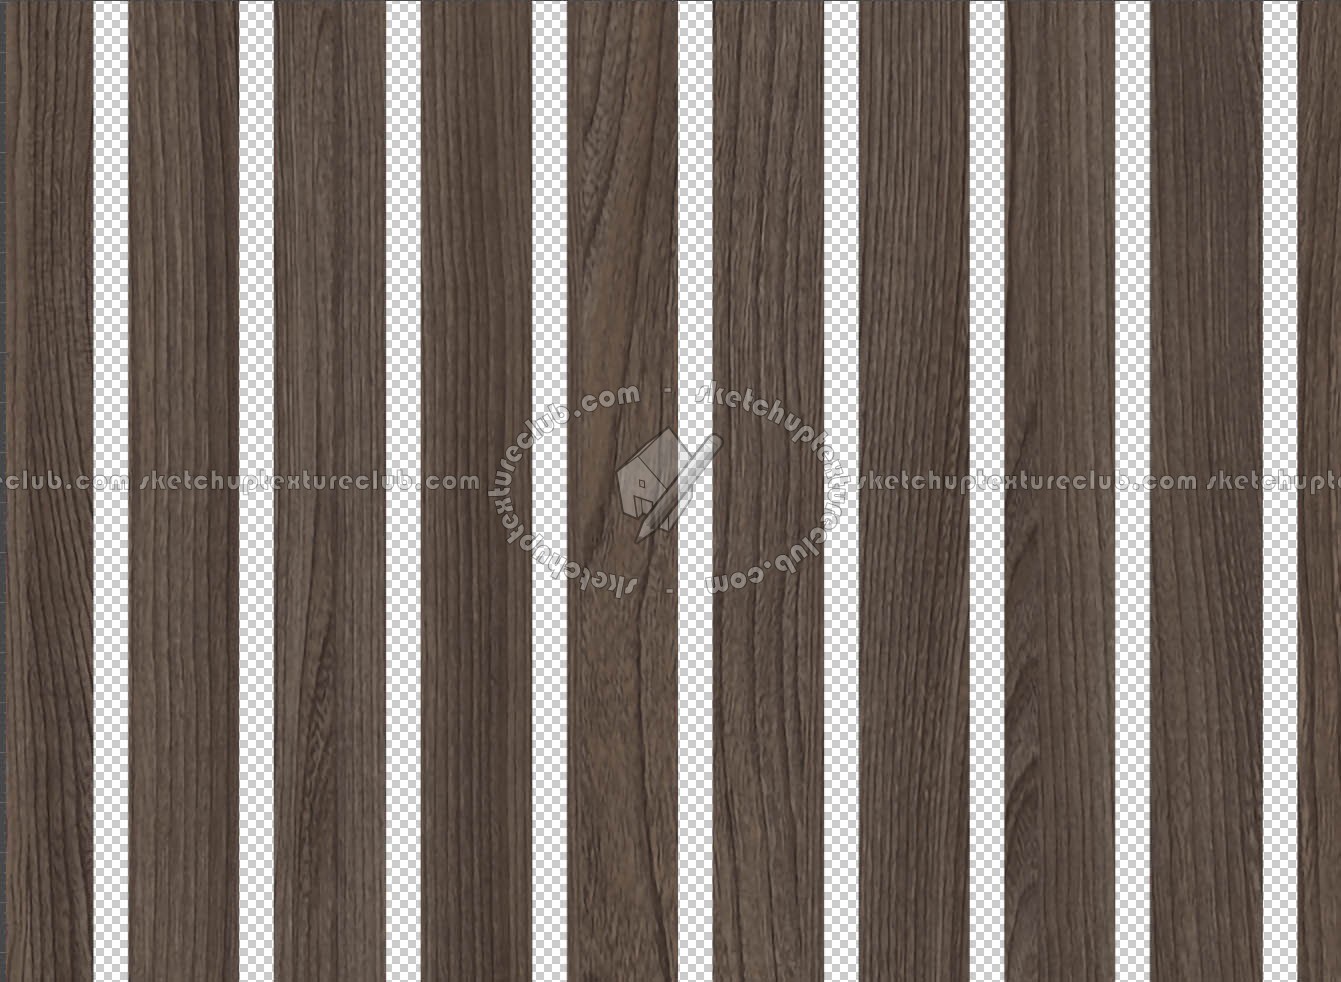 wooden slats Pbr texture seamless 22232